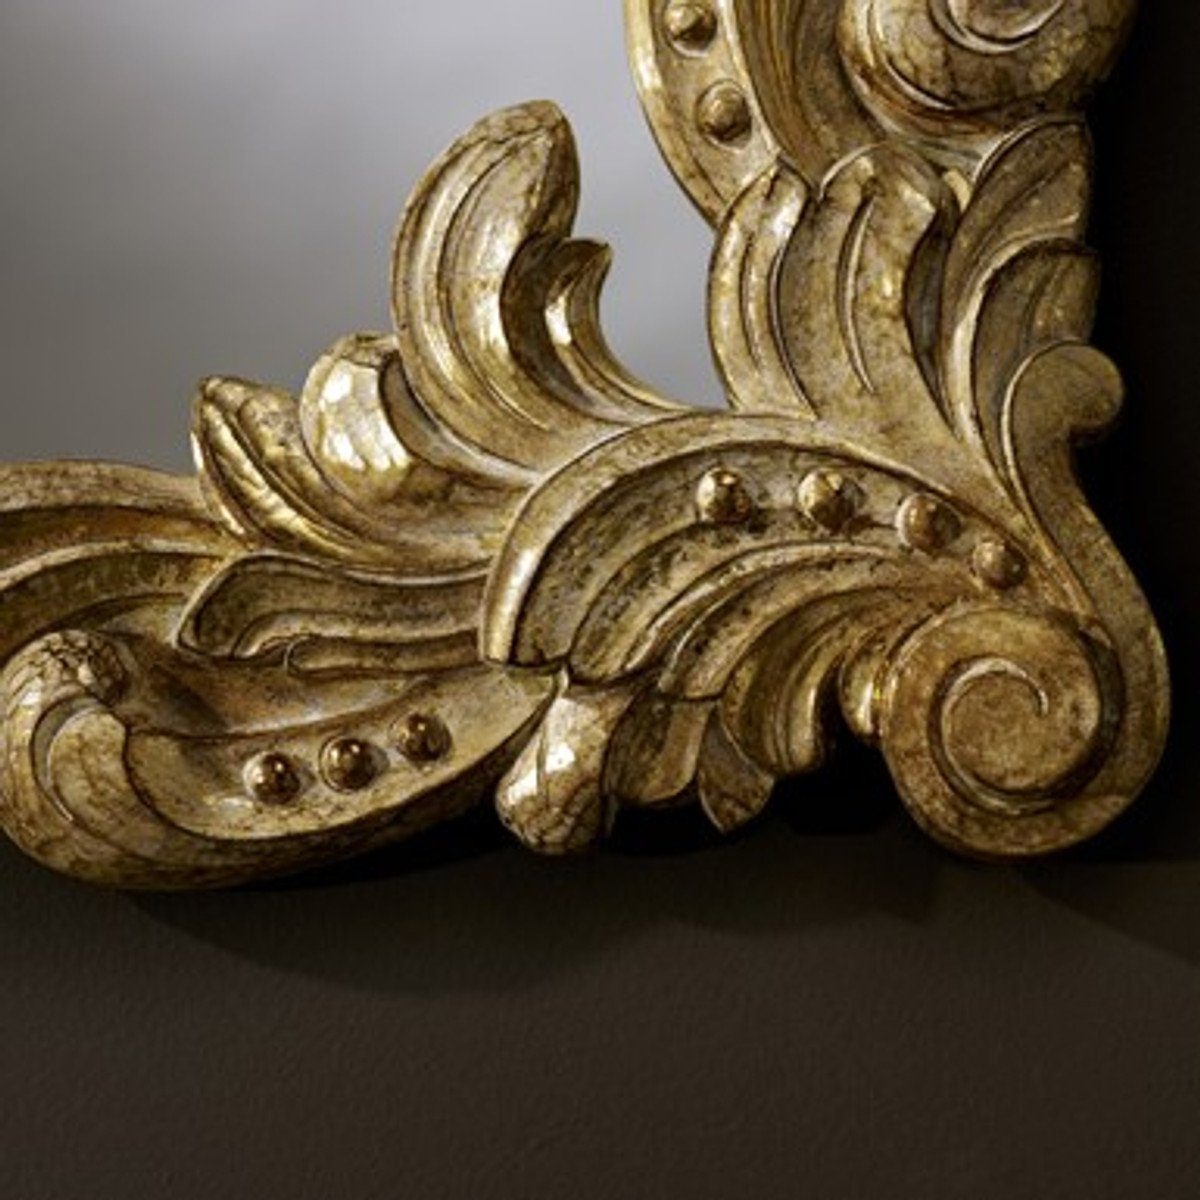 Stil Spiegel Casa Barock x Antik Barocker Wandspiegel Gold cm Padrino Barockspiegel 92 110 -